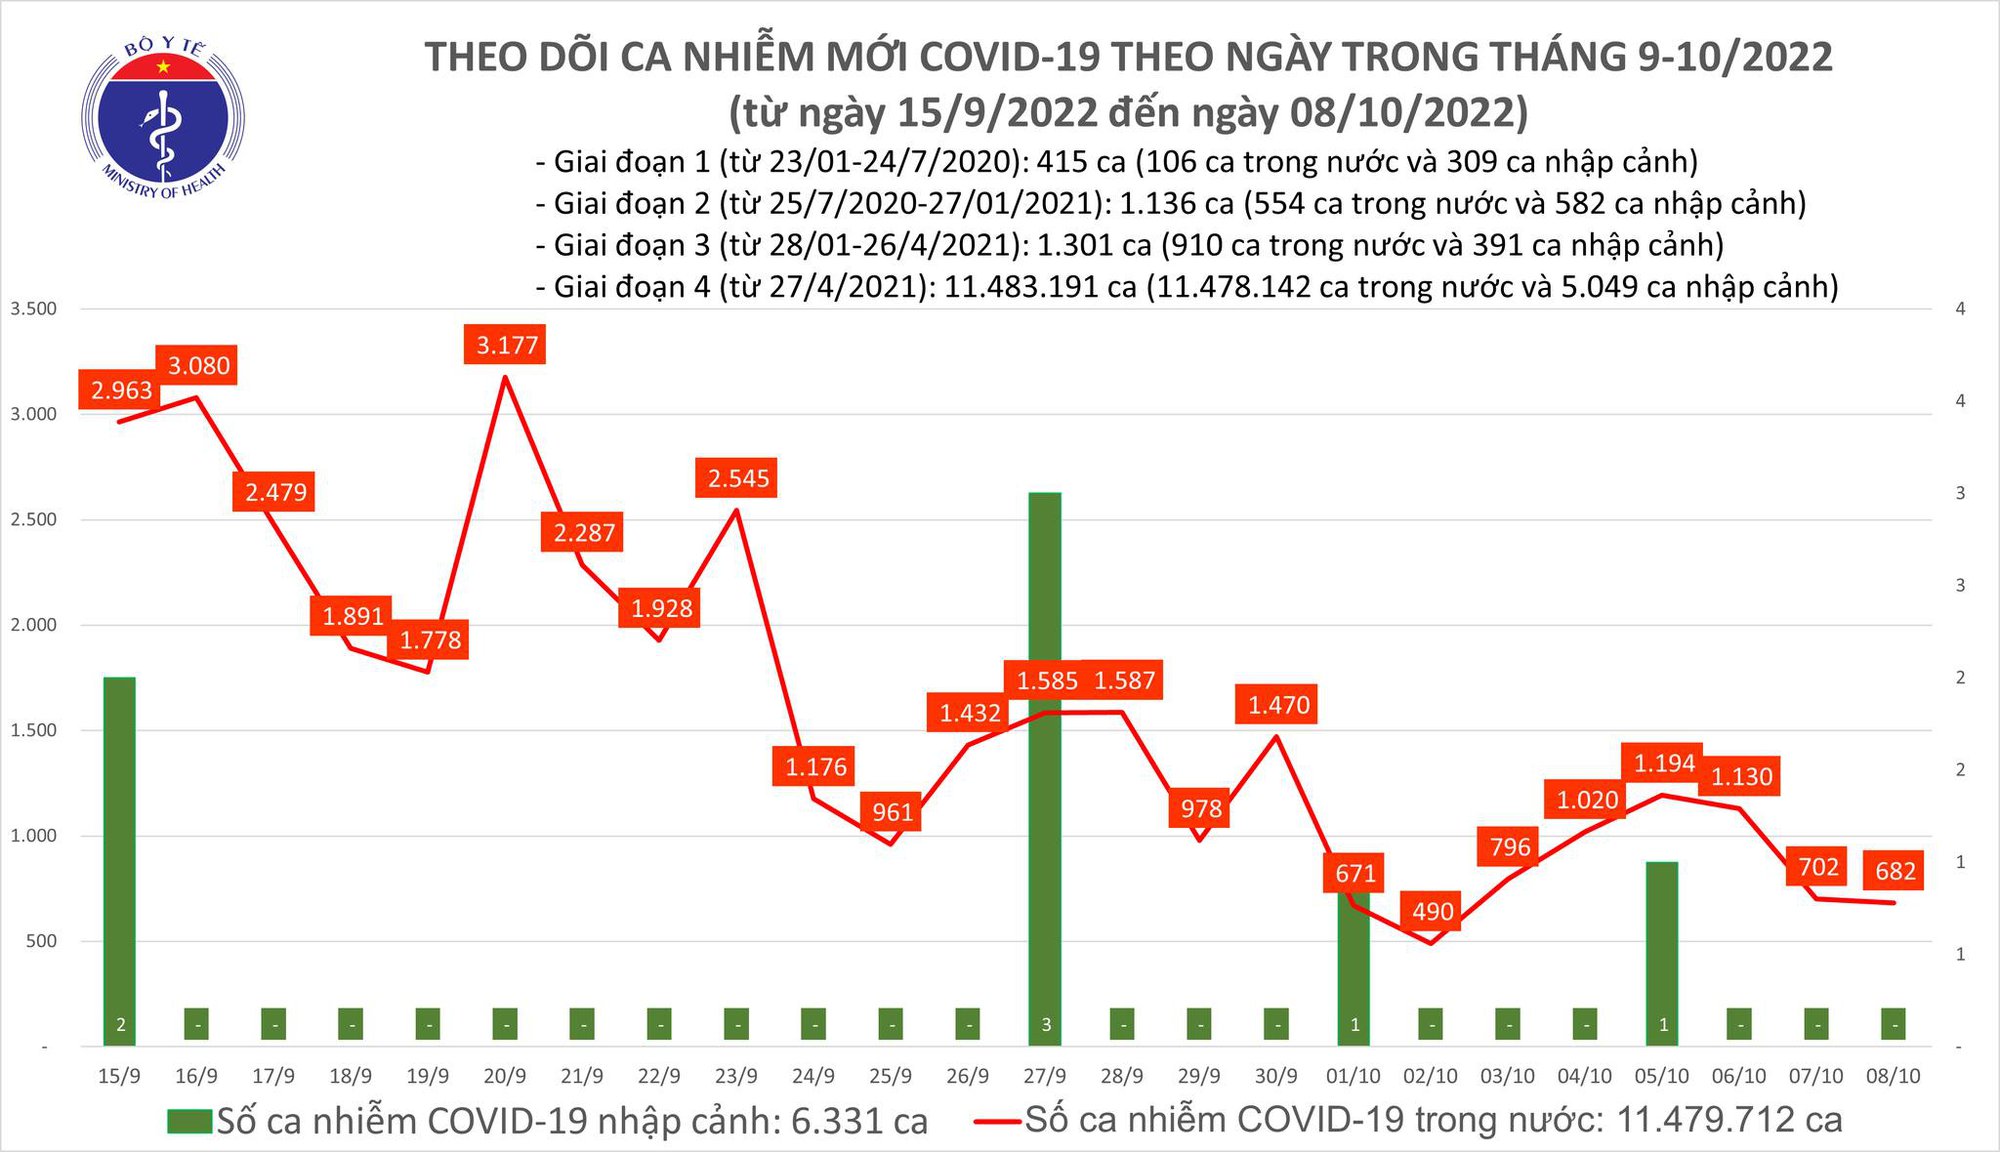 Covid-19 ngày 8/10: Gần 700 ca mắc mới, 1 ca tử vong tại Hà Nội - Ảnh 1.